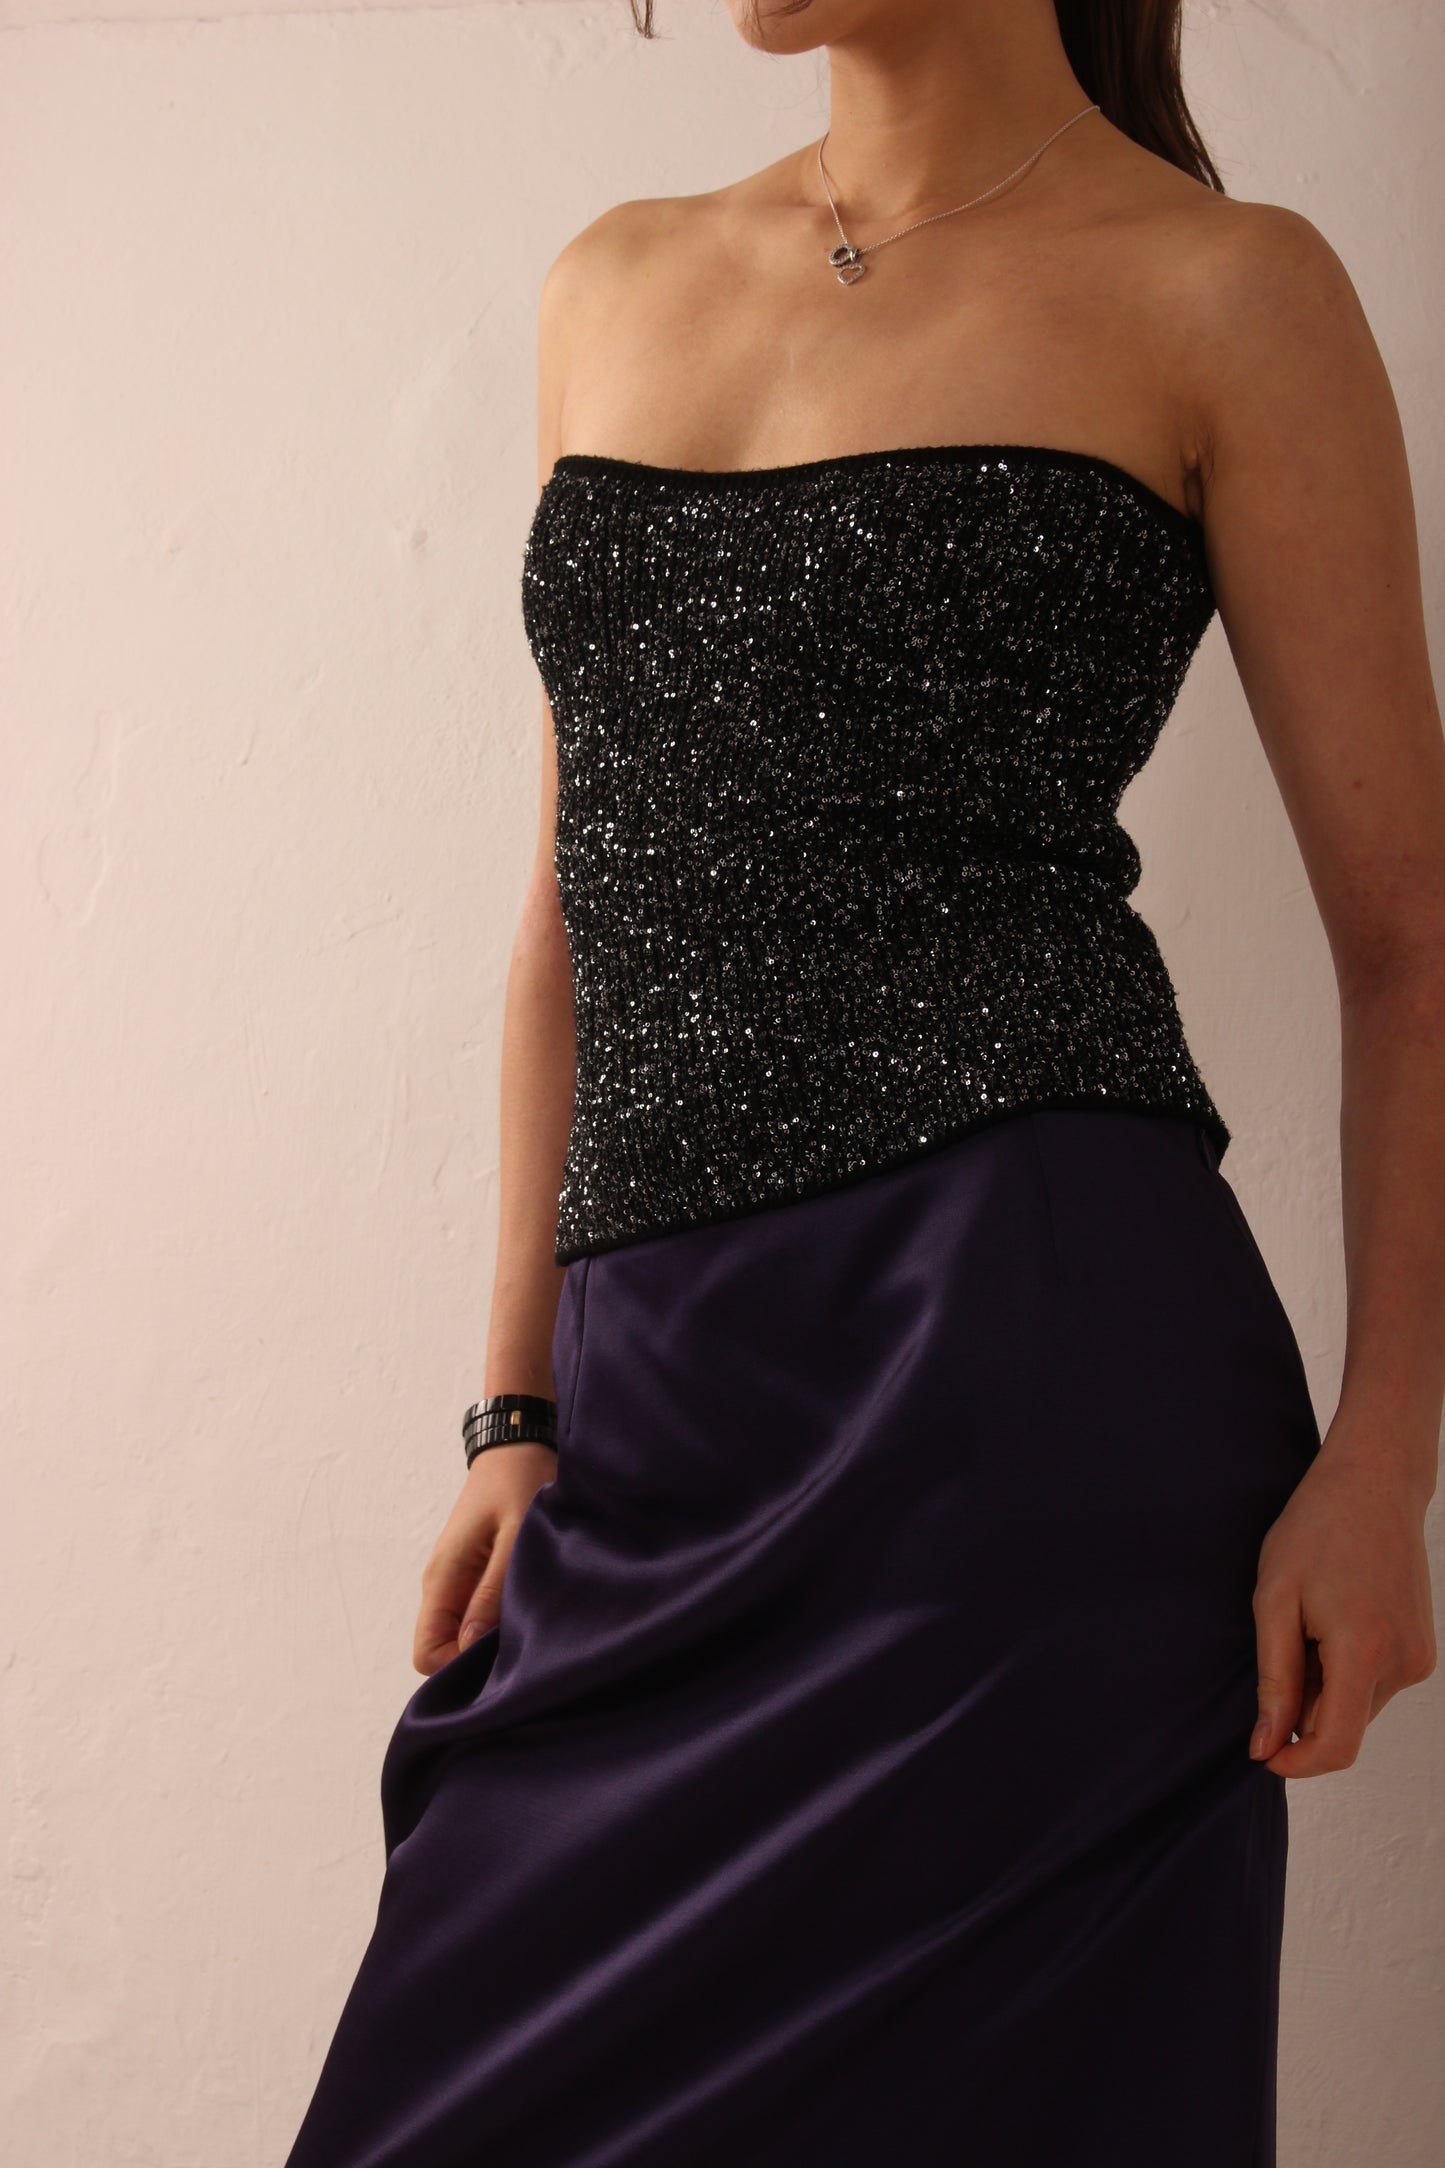 Vintage Yves Saint Laurent Purple Maxi Skirt